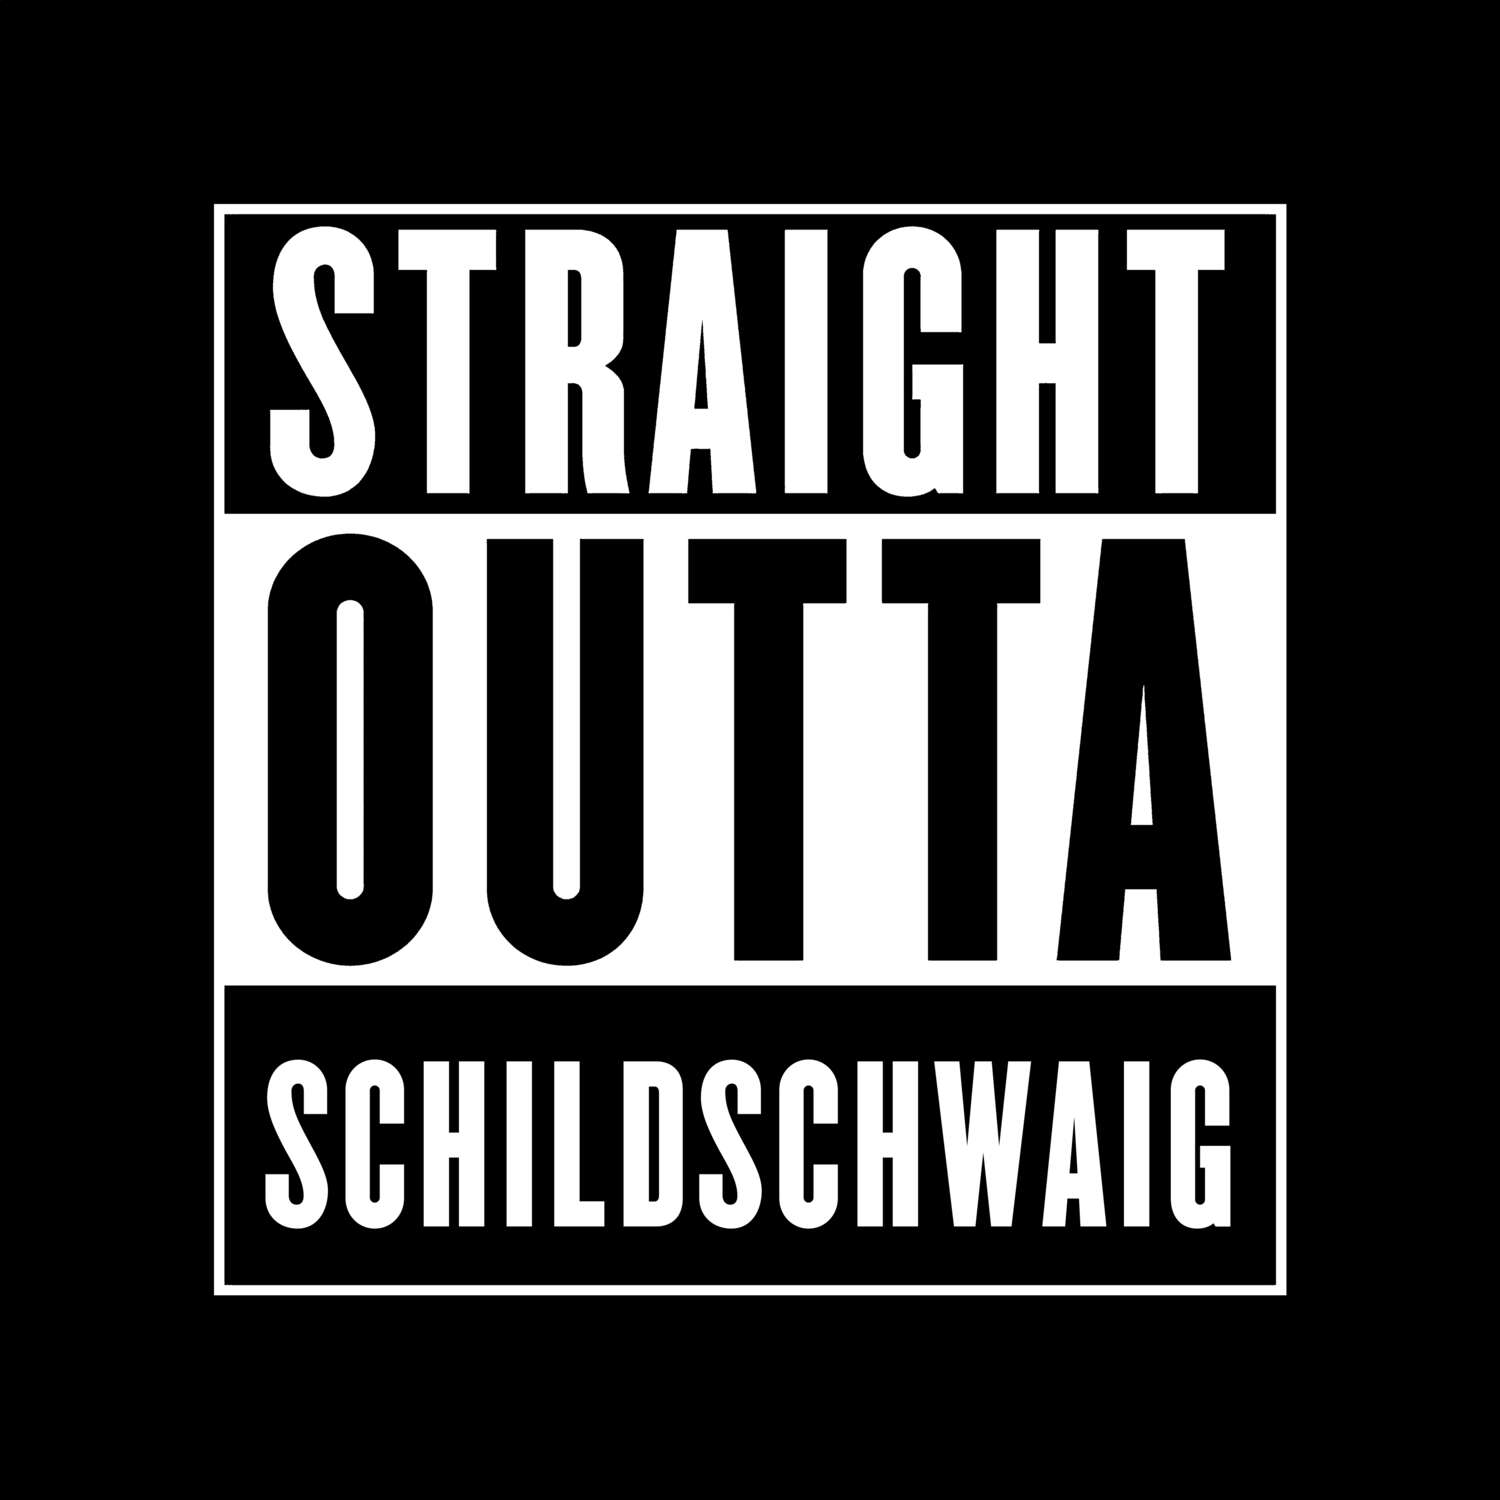 Schildschwaig T-Shirt »Straight Outta«